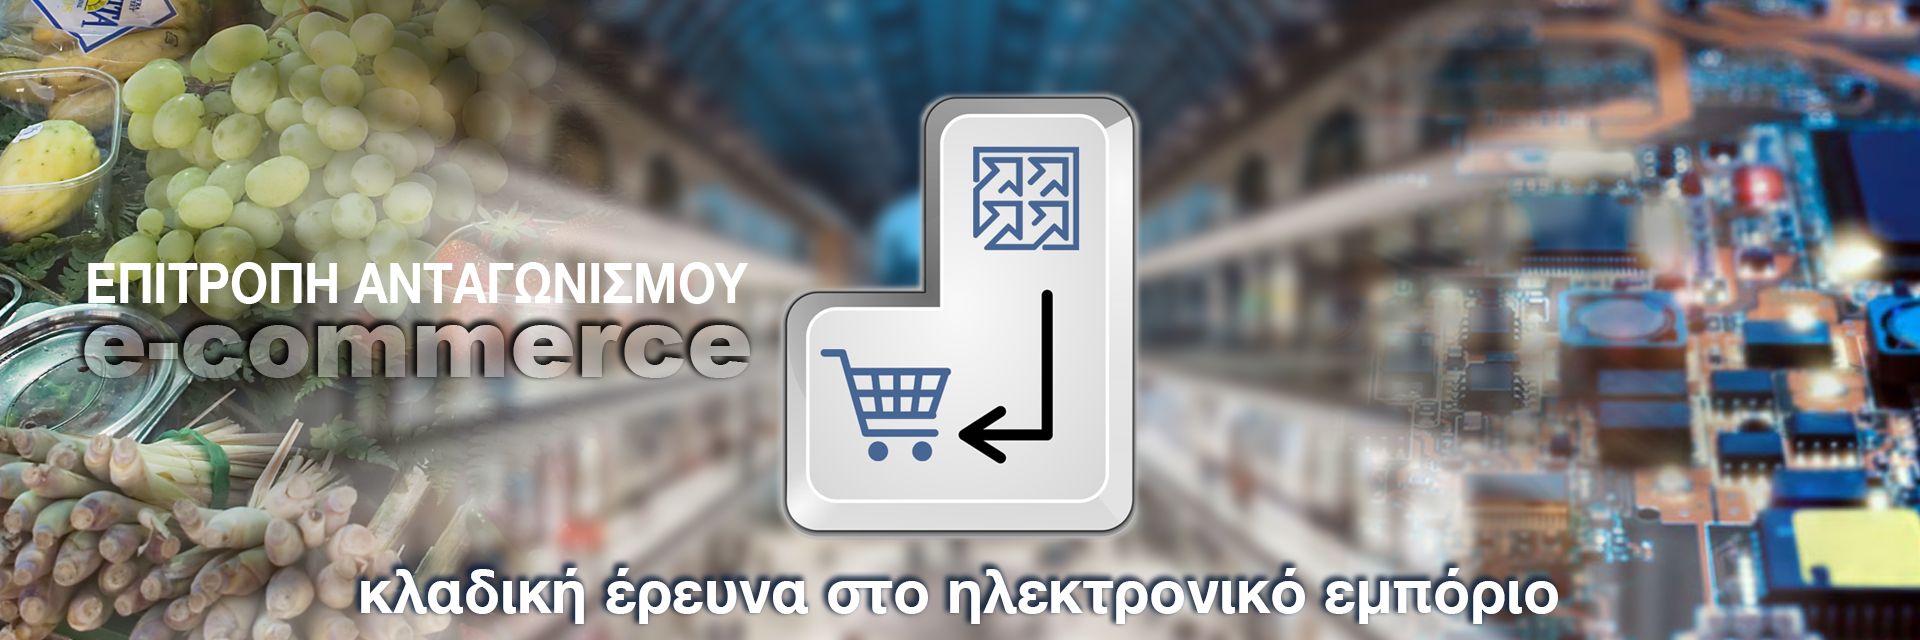 Κλαδική έρευνα e-commerce